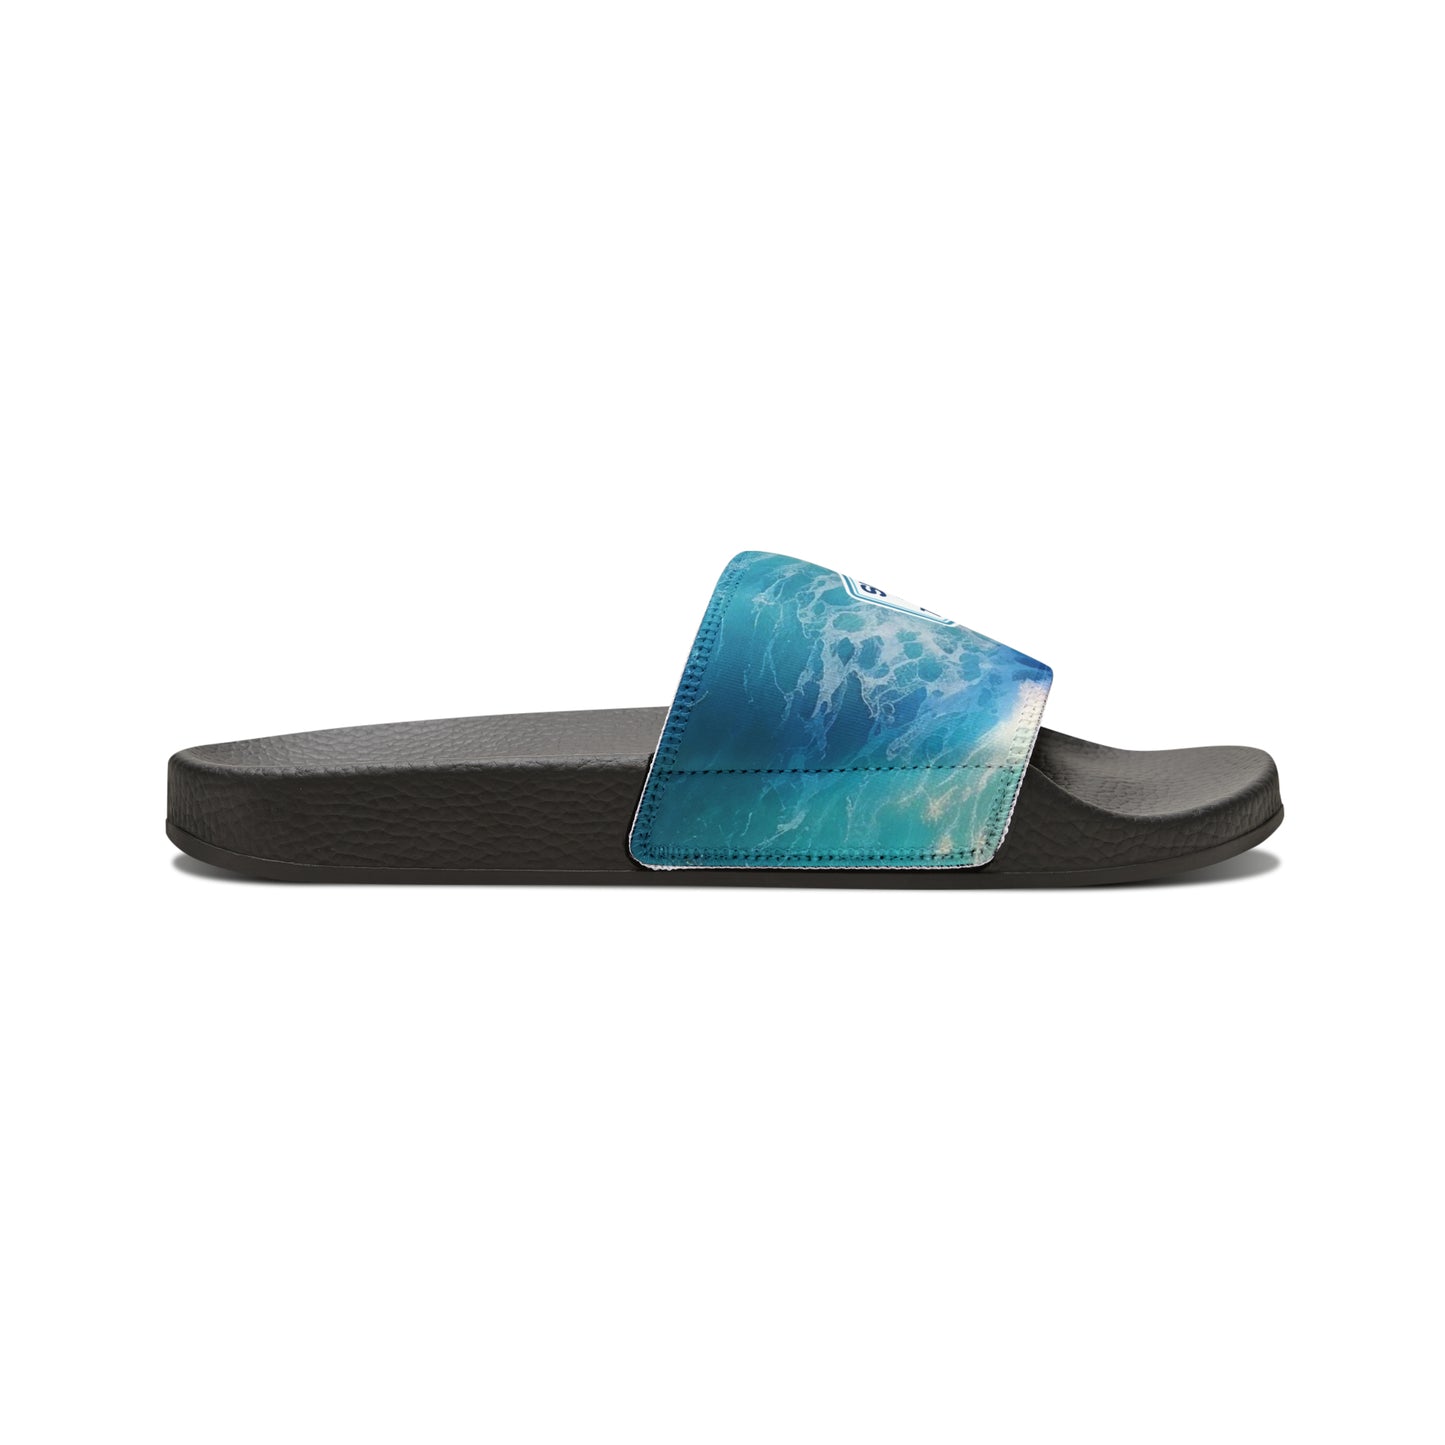 "Surf Club Tortola" Women's Slide Sandals